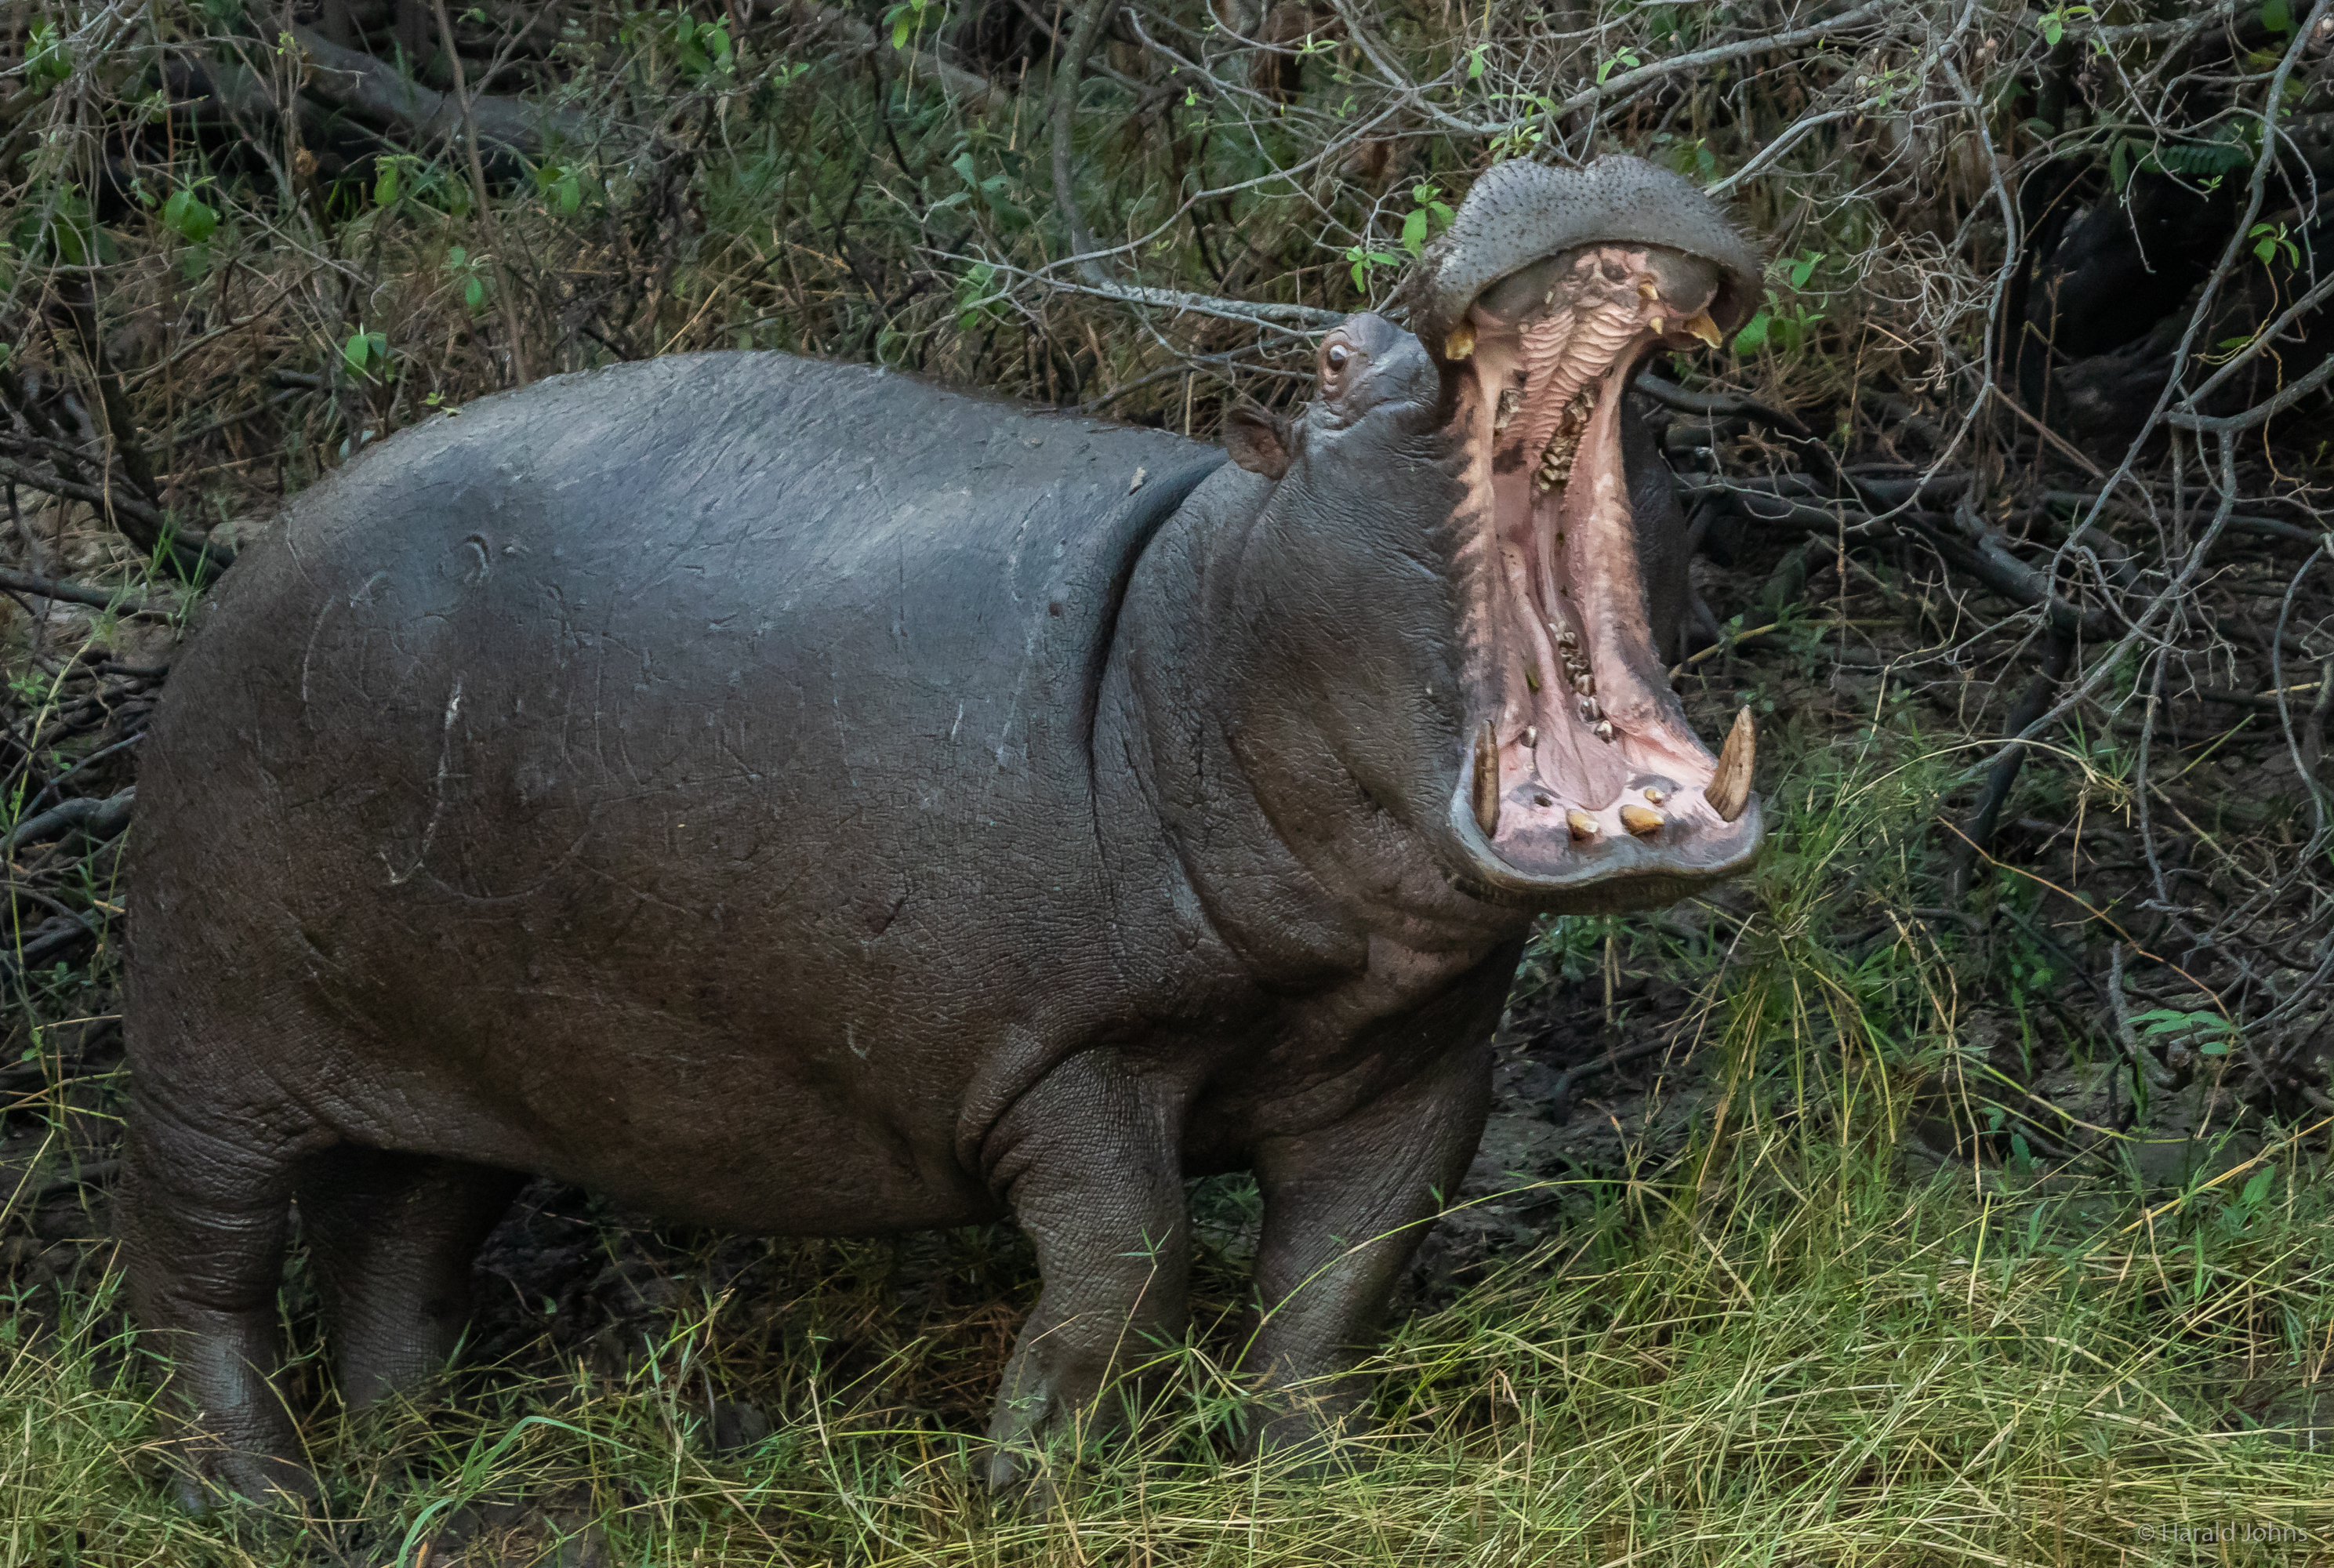 Gähnt oder imponiert dieser Hippo am Ufer?